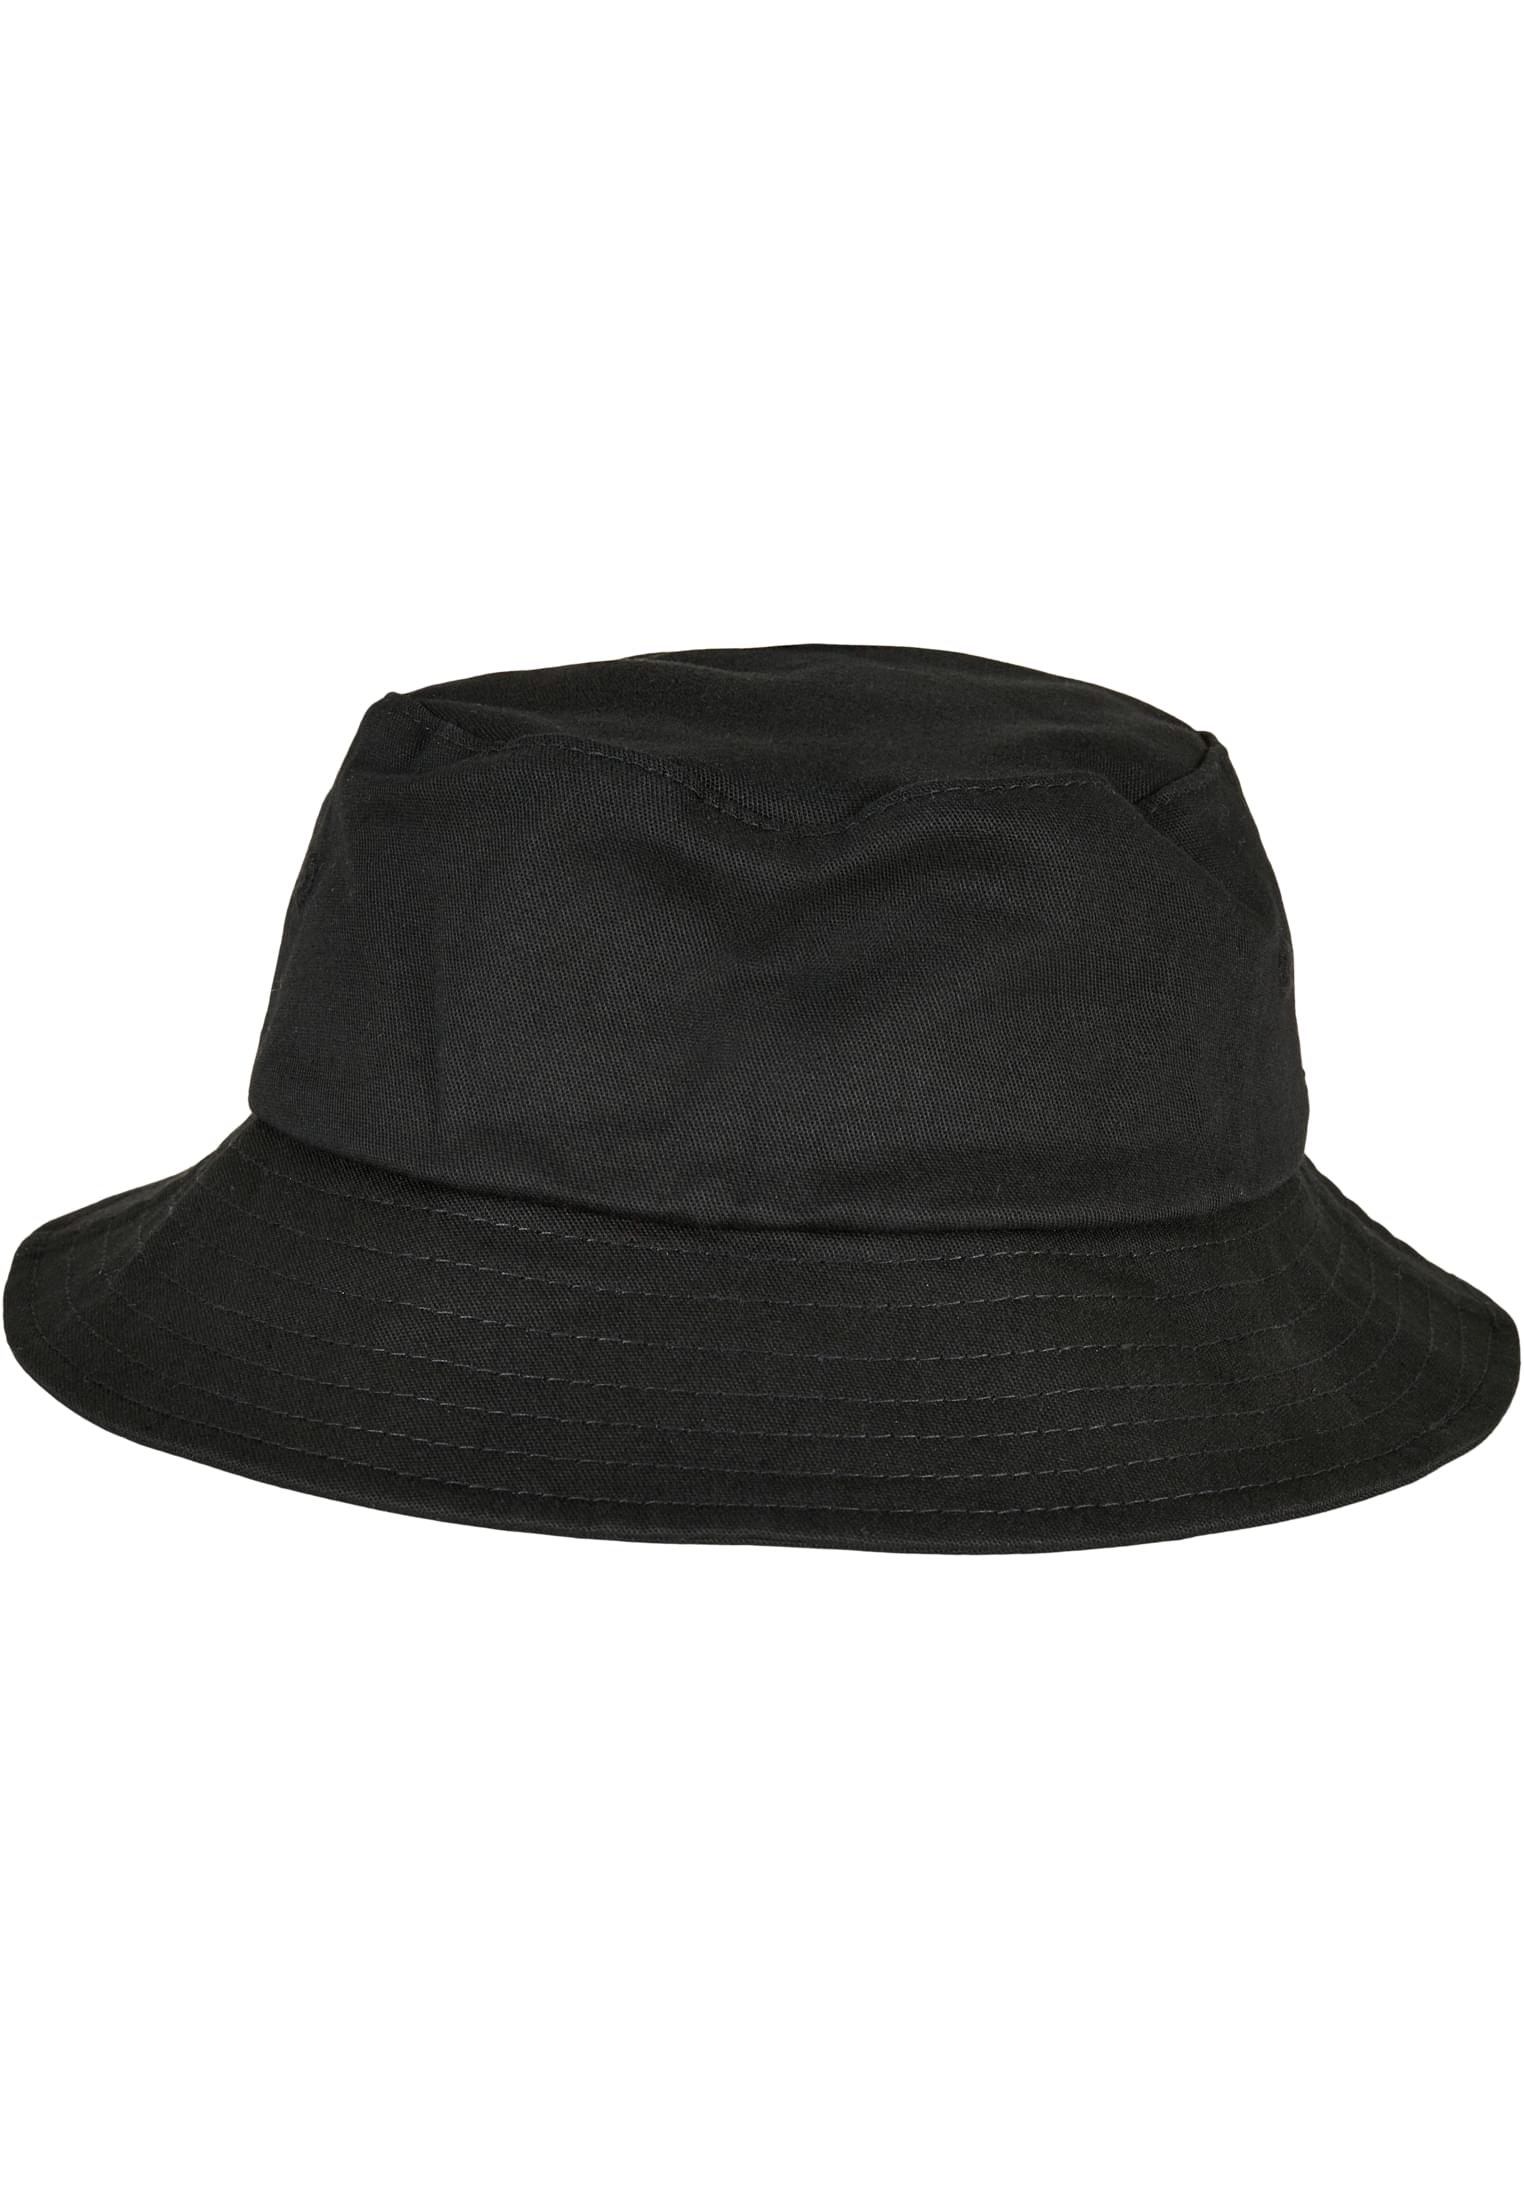 Children's Cap Flexfit Cotton Twill Bucket, Black